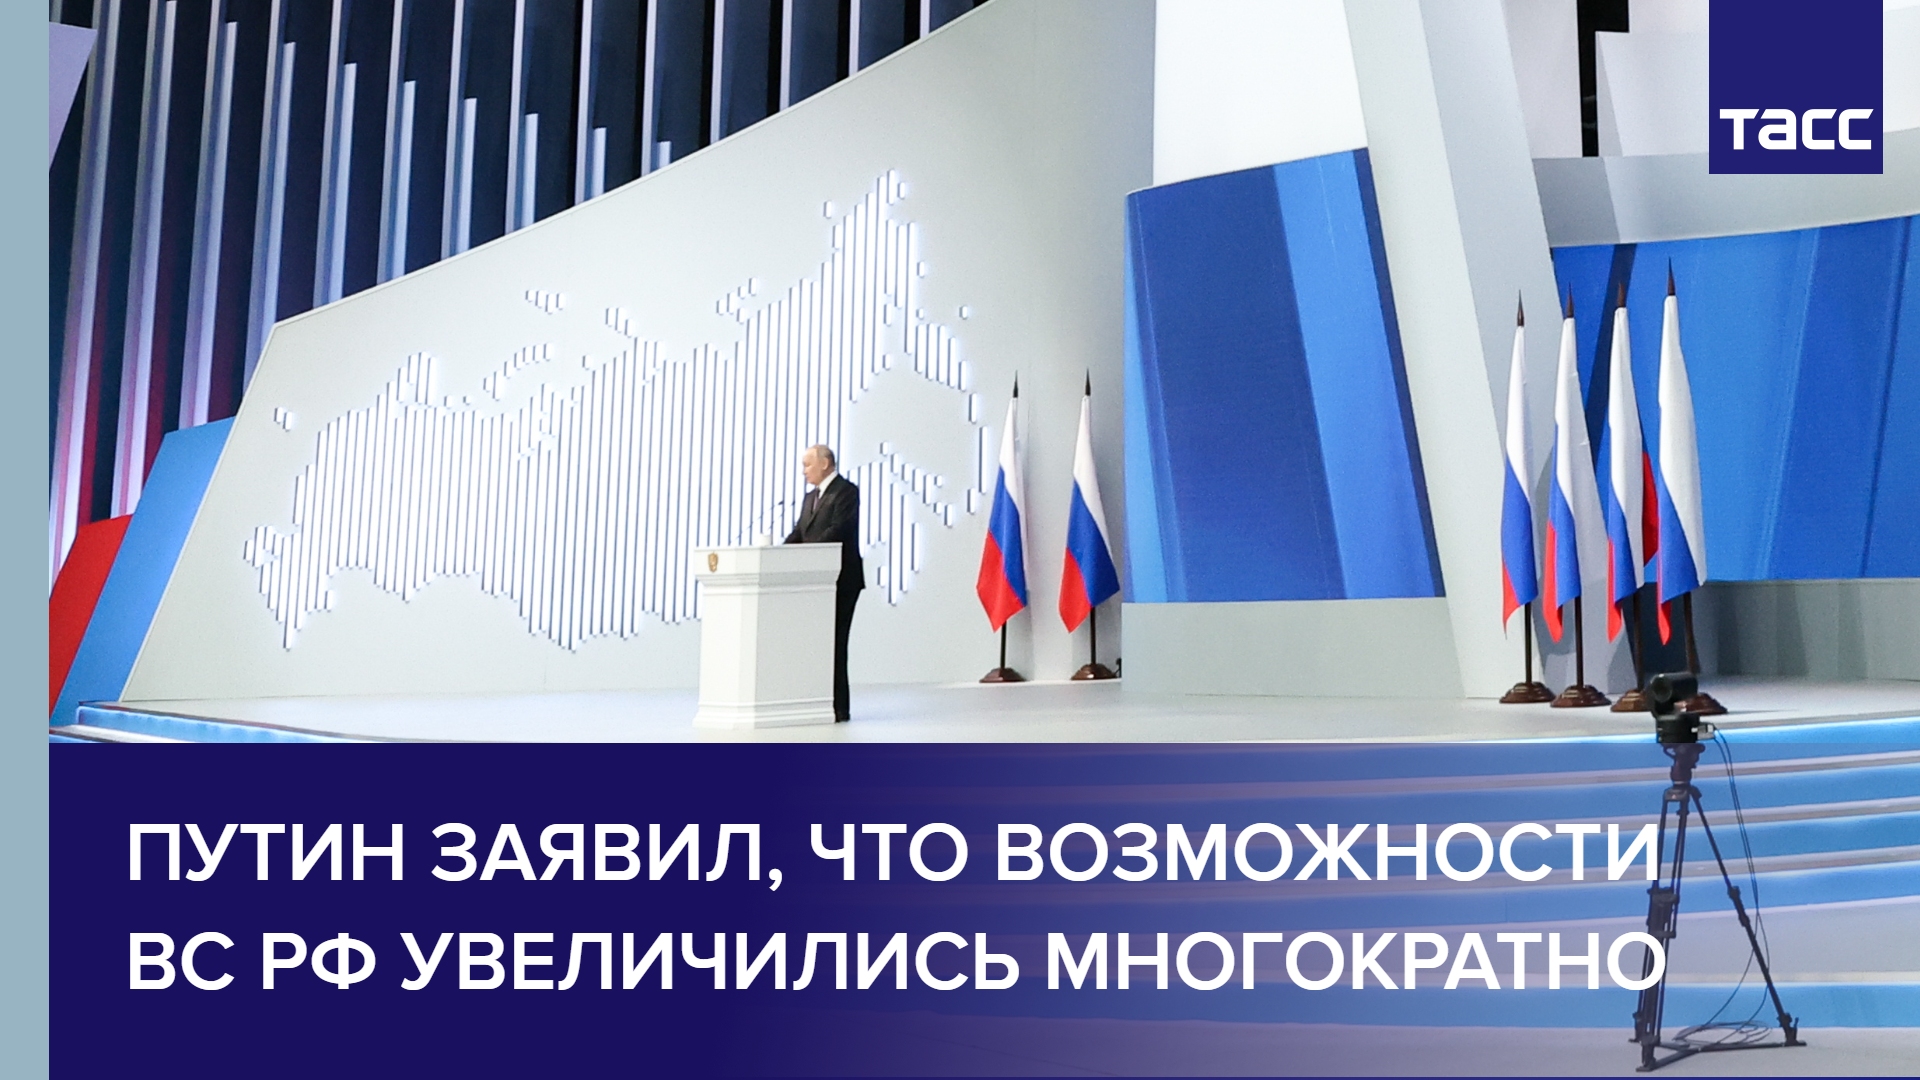 Путин заявил, что возможности ВС РФ увеличились многократно